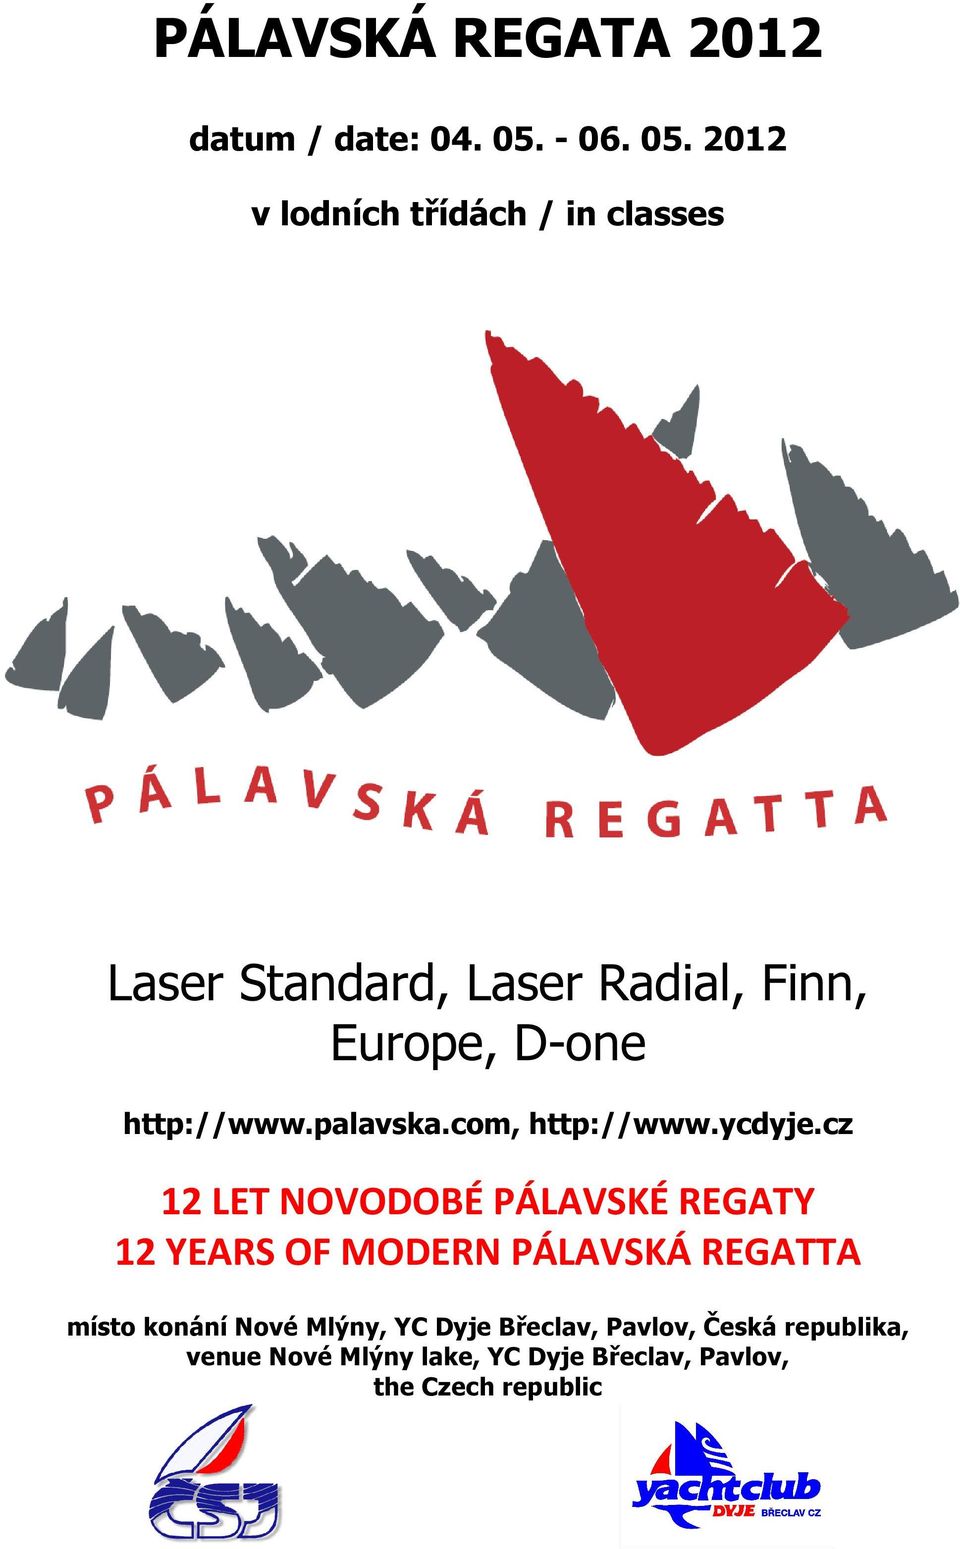 2012 v lodních třídách / in classes Laser Standard, Laser Radial, Finn, Europe, D-one,